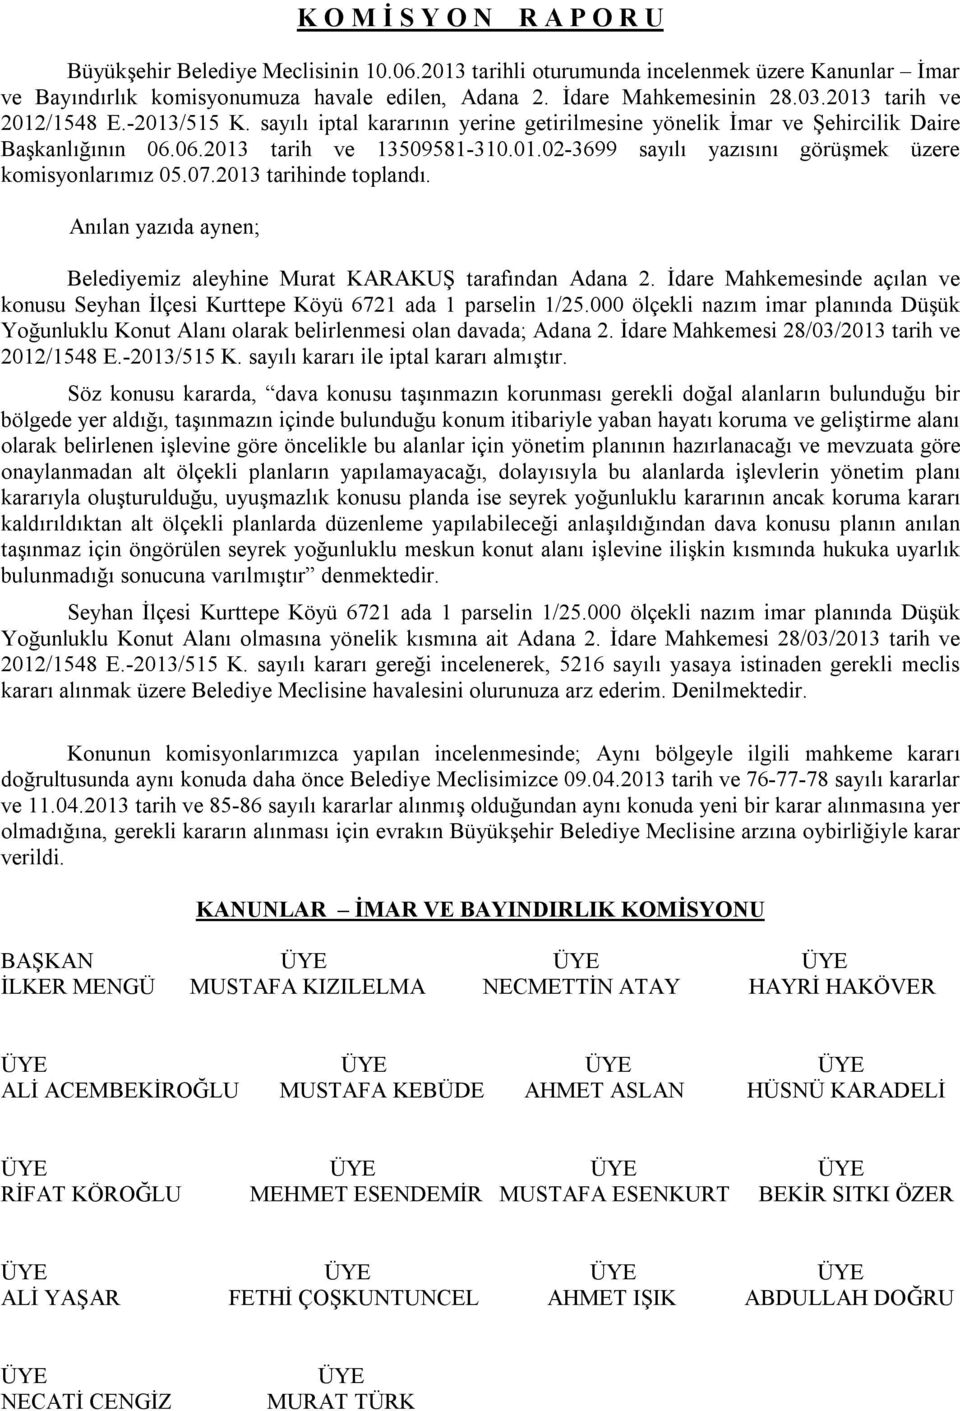 07.2013 tarihinde toplandı. Anılan yazıda aynen; Belediyemiz aleyhine Murat KARAKUŞ tarafından Adana 2. İdare Mahkemesinde açılan ve konusu Seyhan İlçesi Kurttepe Köyü 6721 ada 1 parselin 1/25.